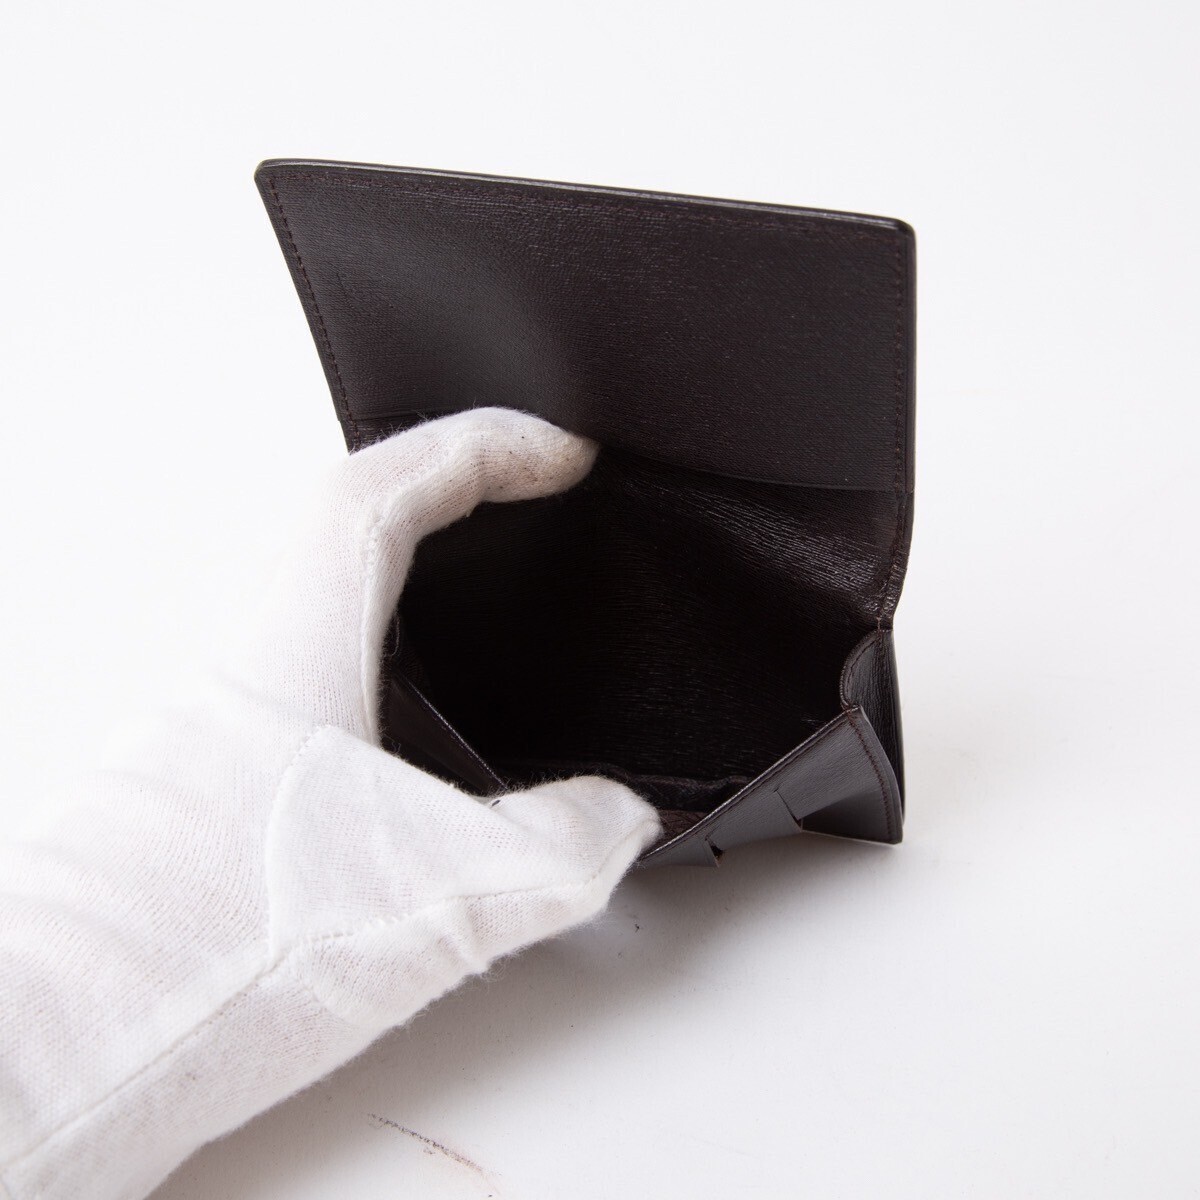  unused goods * Dunhill card-case card-case business card holder black black Logo plate safia-no leather men's folding in half 